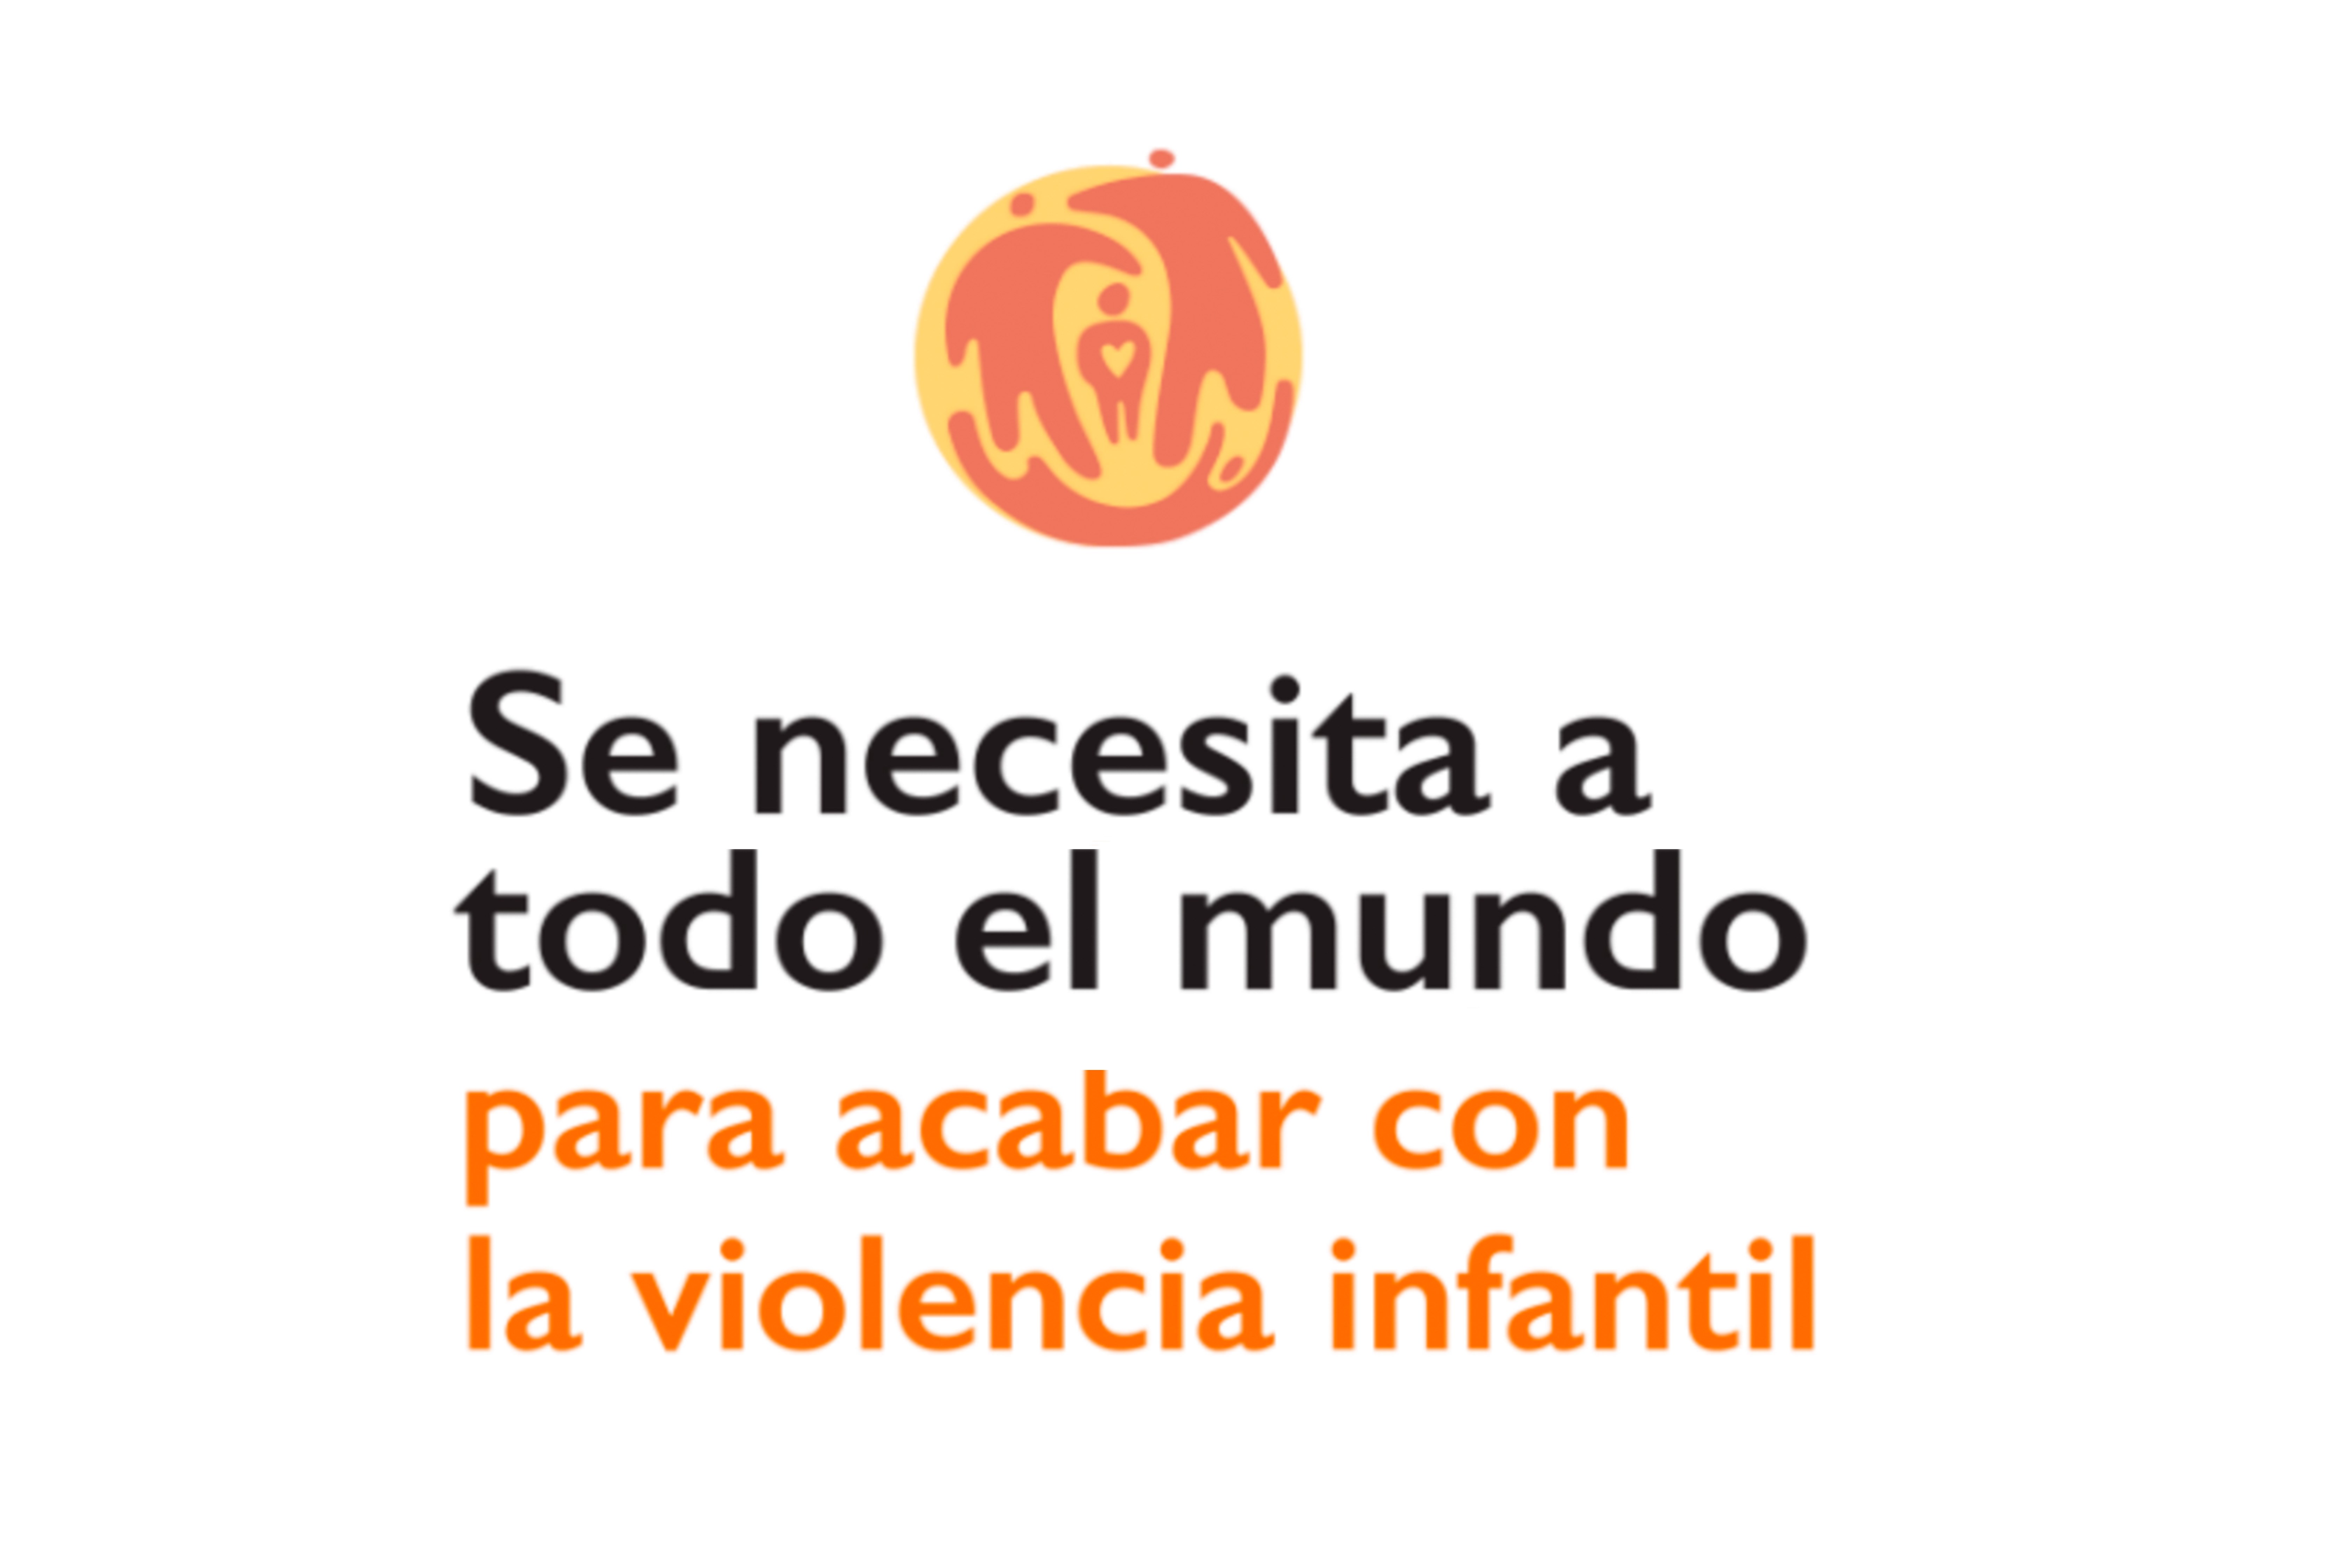 Imagen donde se lee: "Se necesita a todo el mundo para acabar con la violencia infantil"